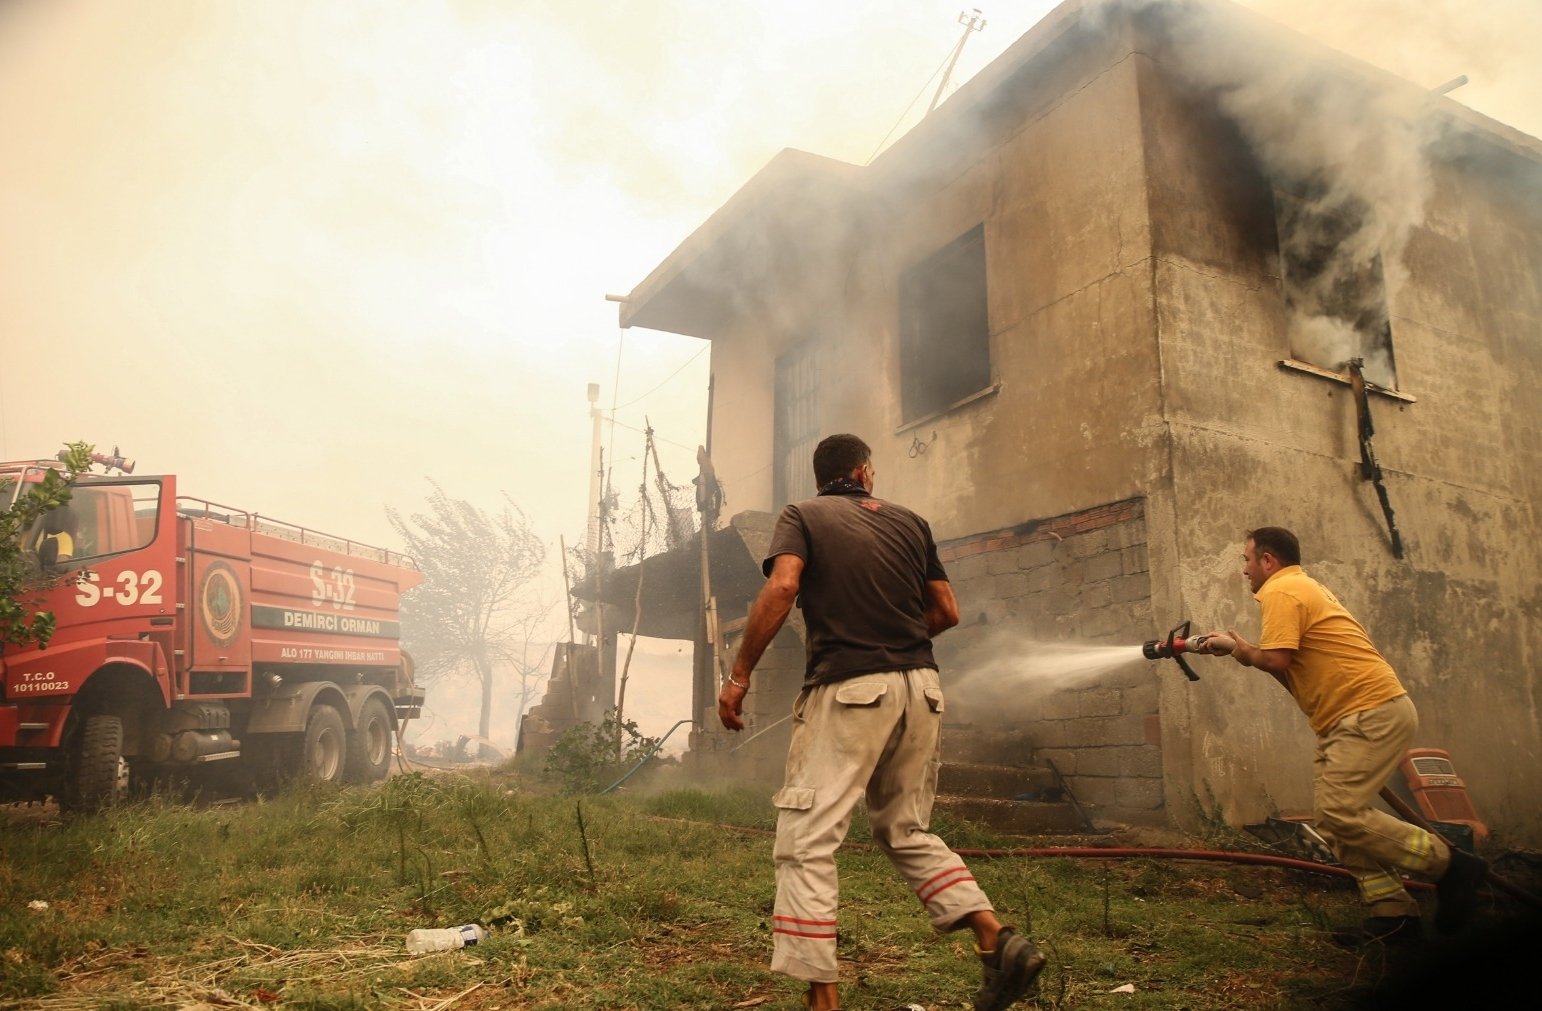 Пожар в Турции. Фото: Euronews